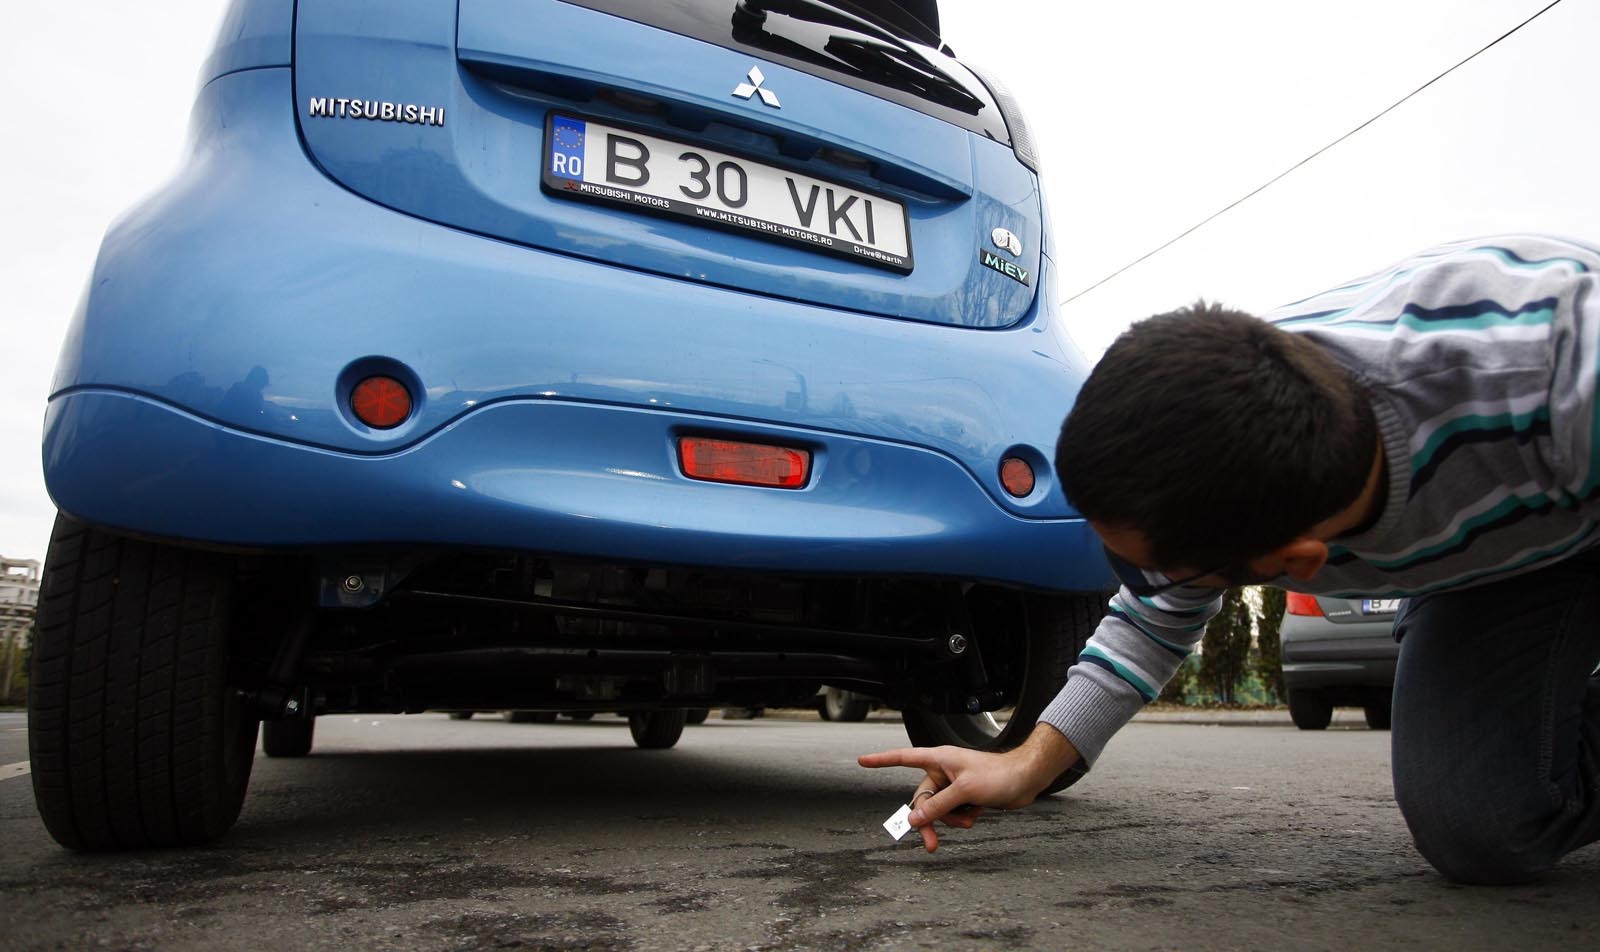 Din pacate, in ciuda avantajelor, pretul lui Mitsubishi i-MiEV ramane prohibitiv in Romania